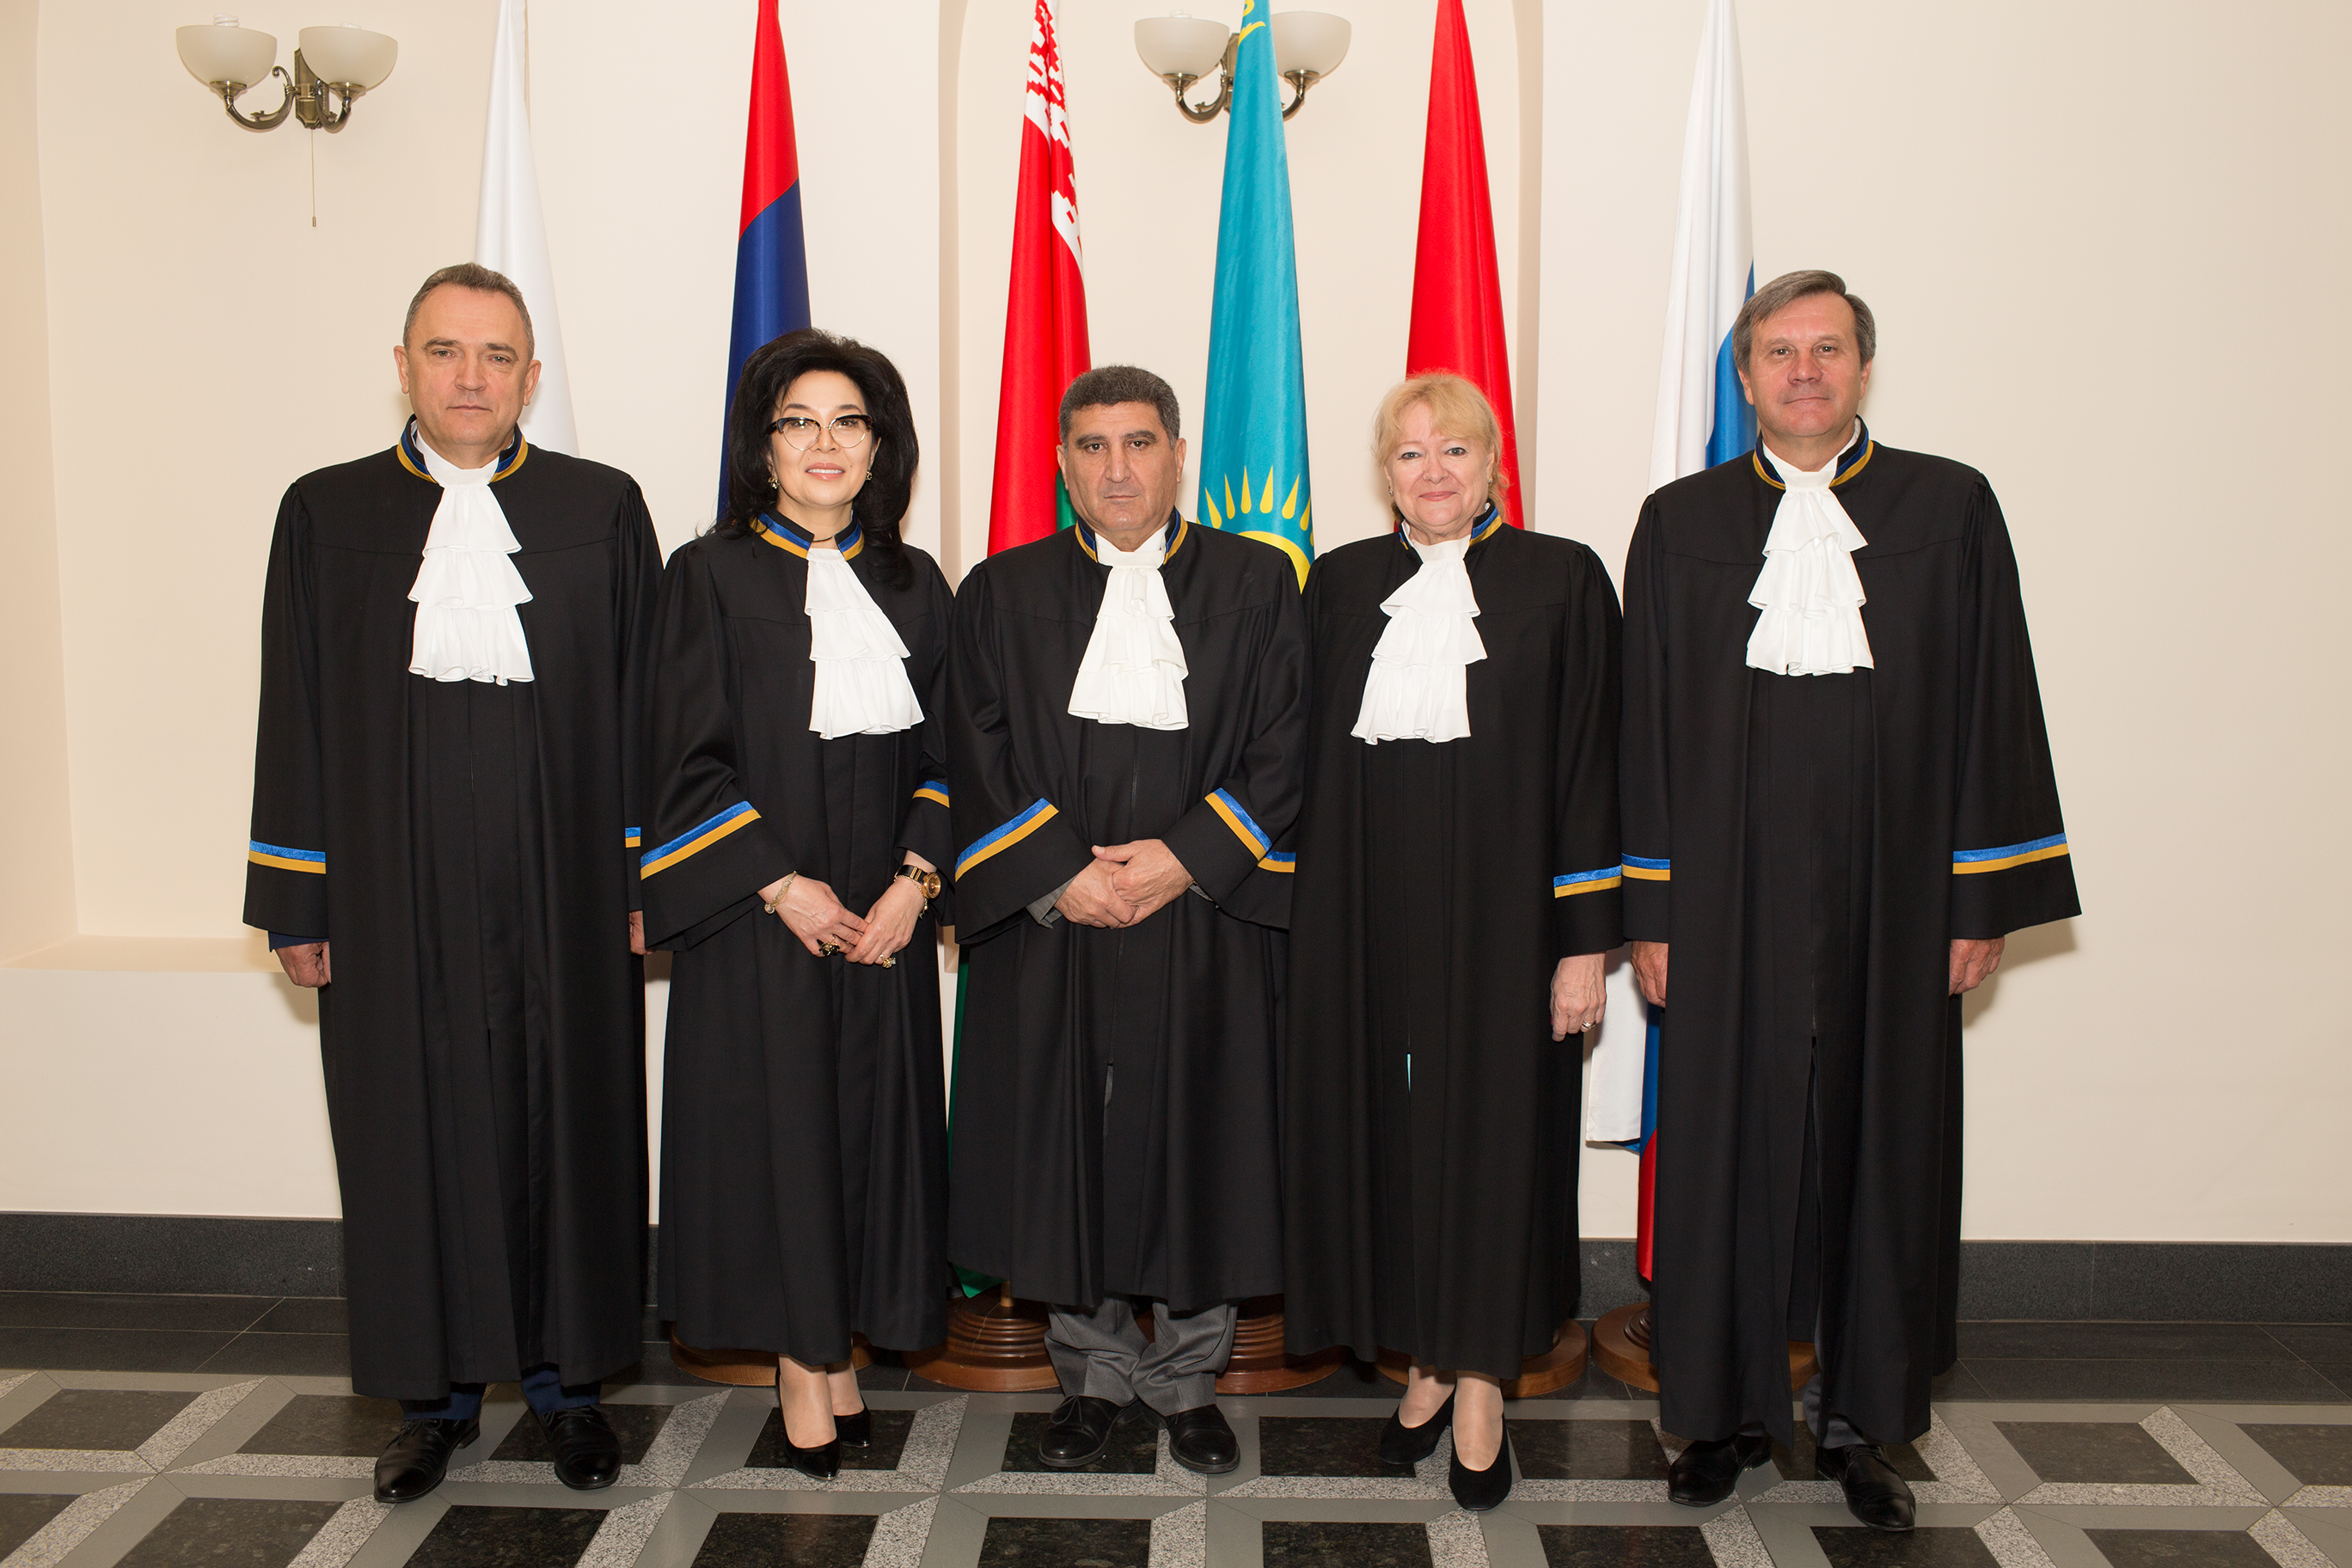 Сайт арбитражных судей. Судьи арбитражных судов. Присяга судьи. Судья арбитражного суда Селиверстов. Судьи суда Швейцарии.